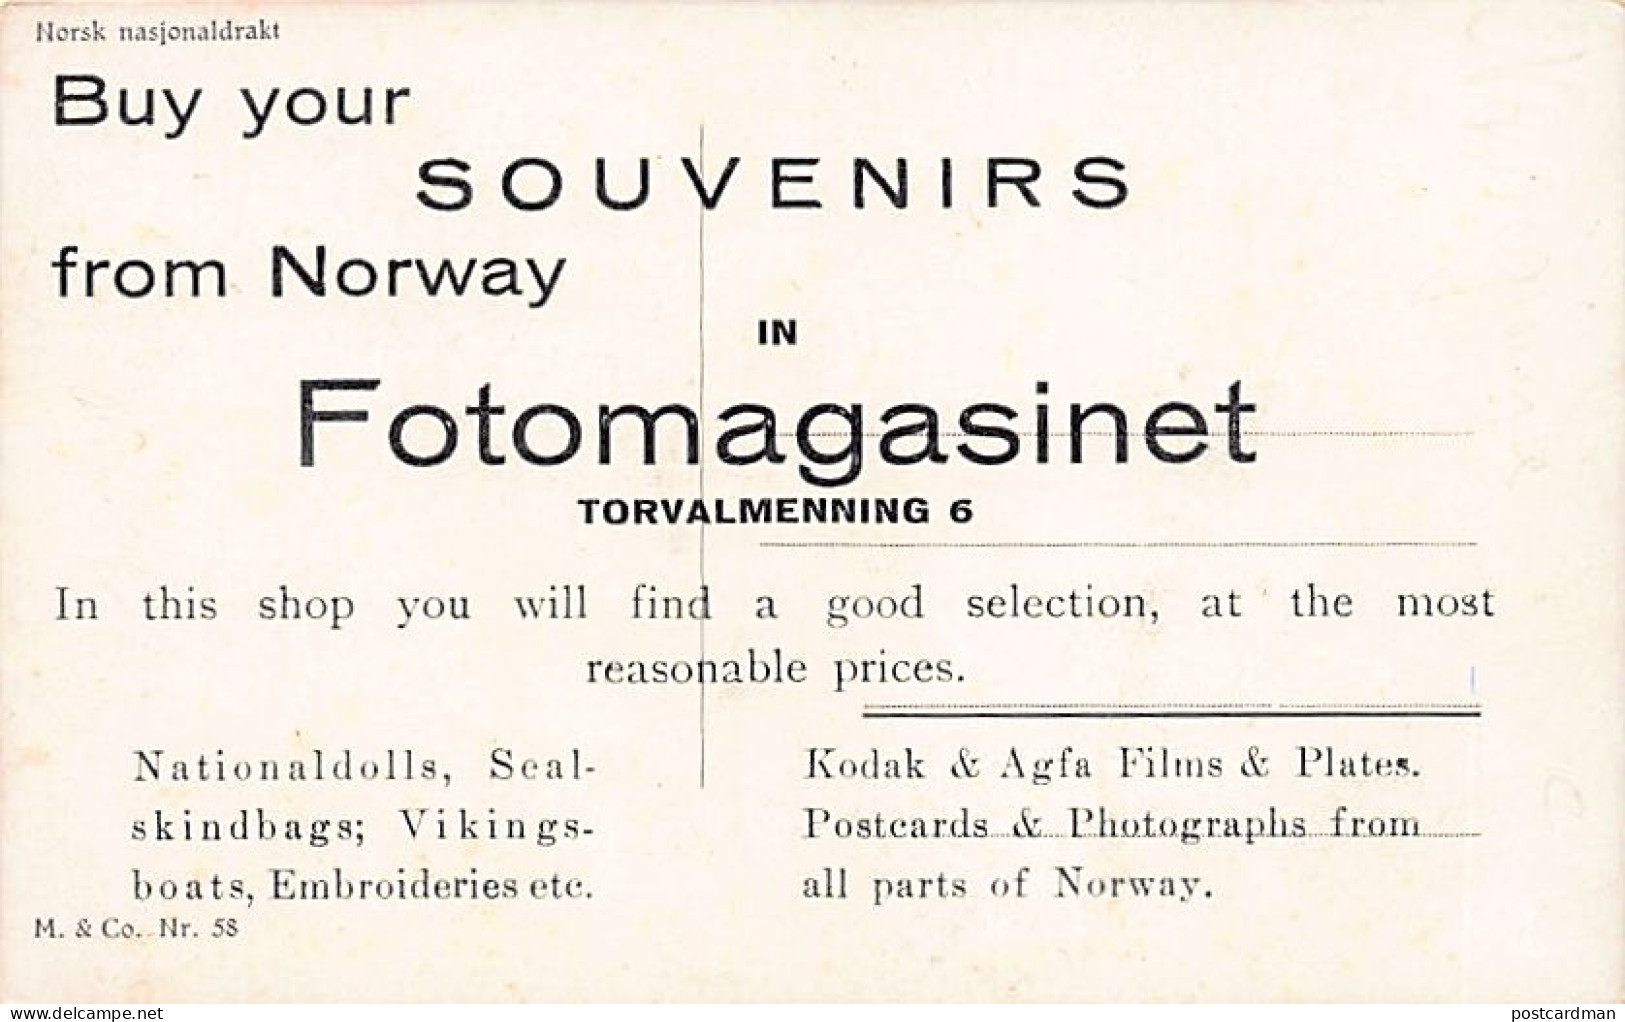 Norway - BERGEN - Fotomagasinet, Torvalmenning 6 - Publ. M. & Co. 58 - Norway